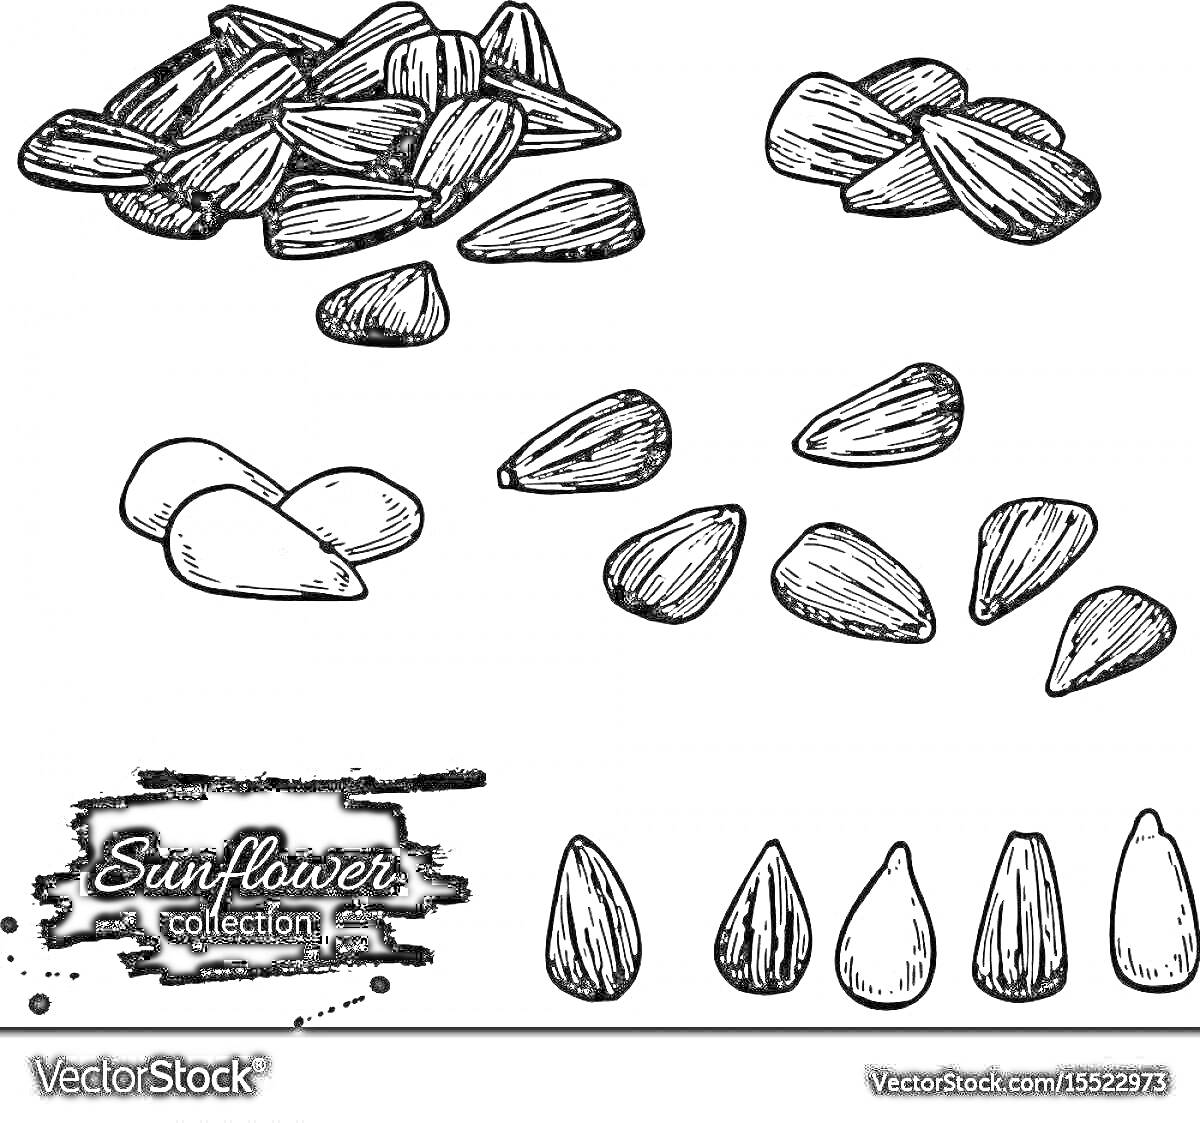 Раскраска Сборник семечек подсолнуха: целые семена, очищенные семена и их вариации